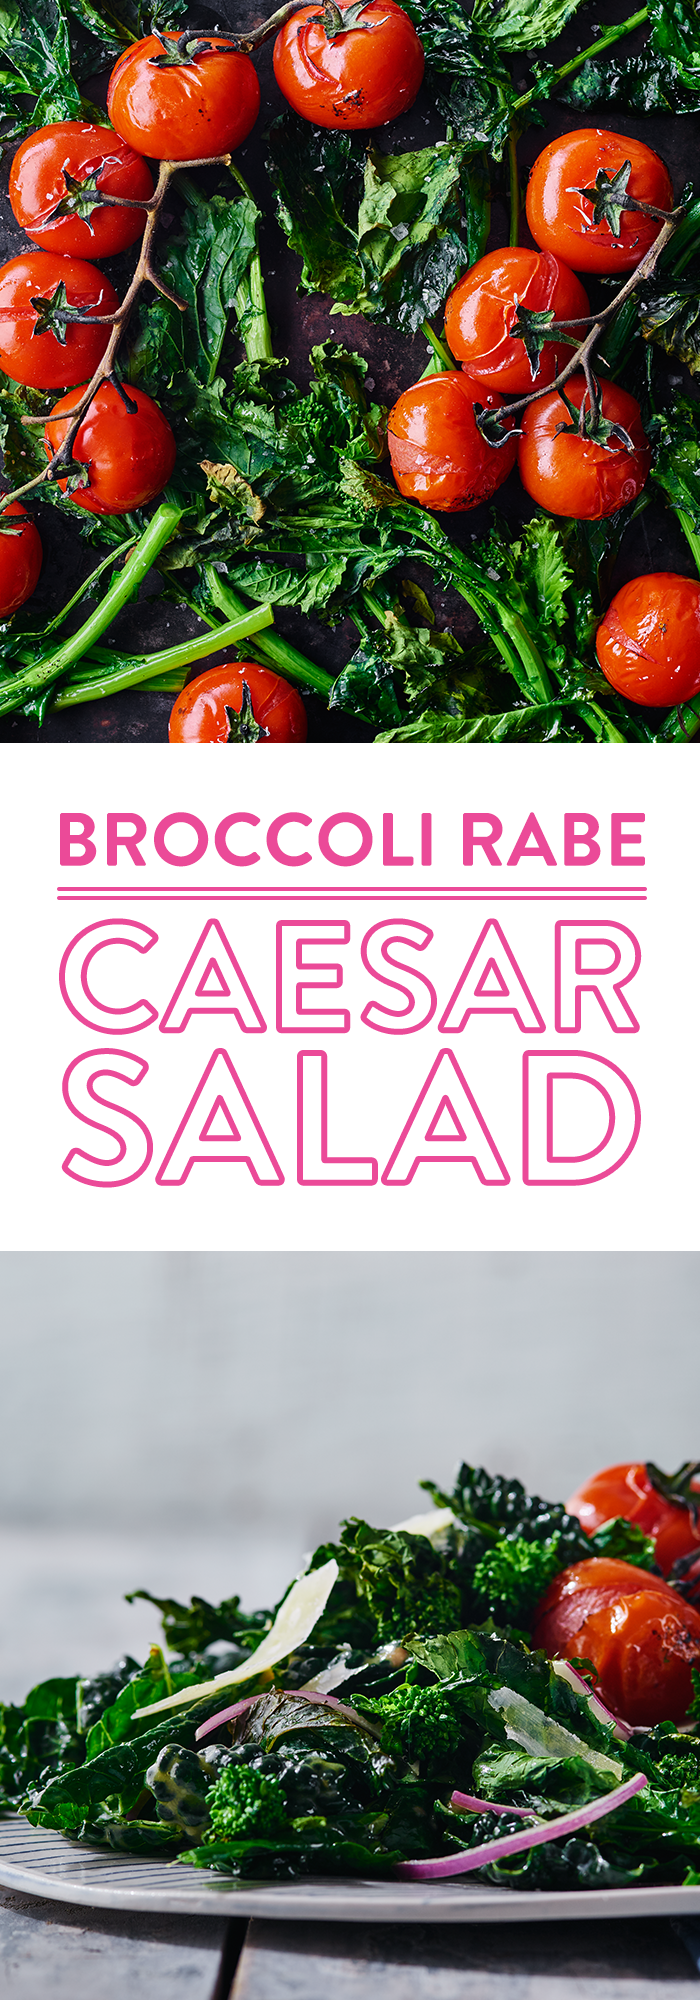 Broccoli Rabe Caesar Salad